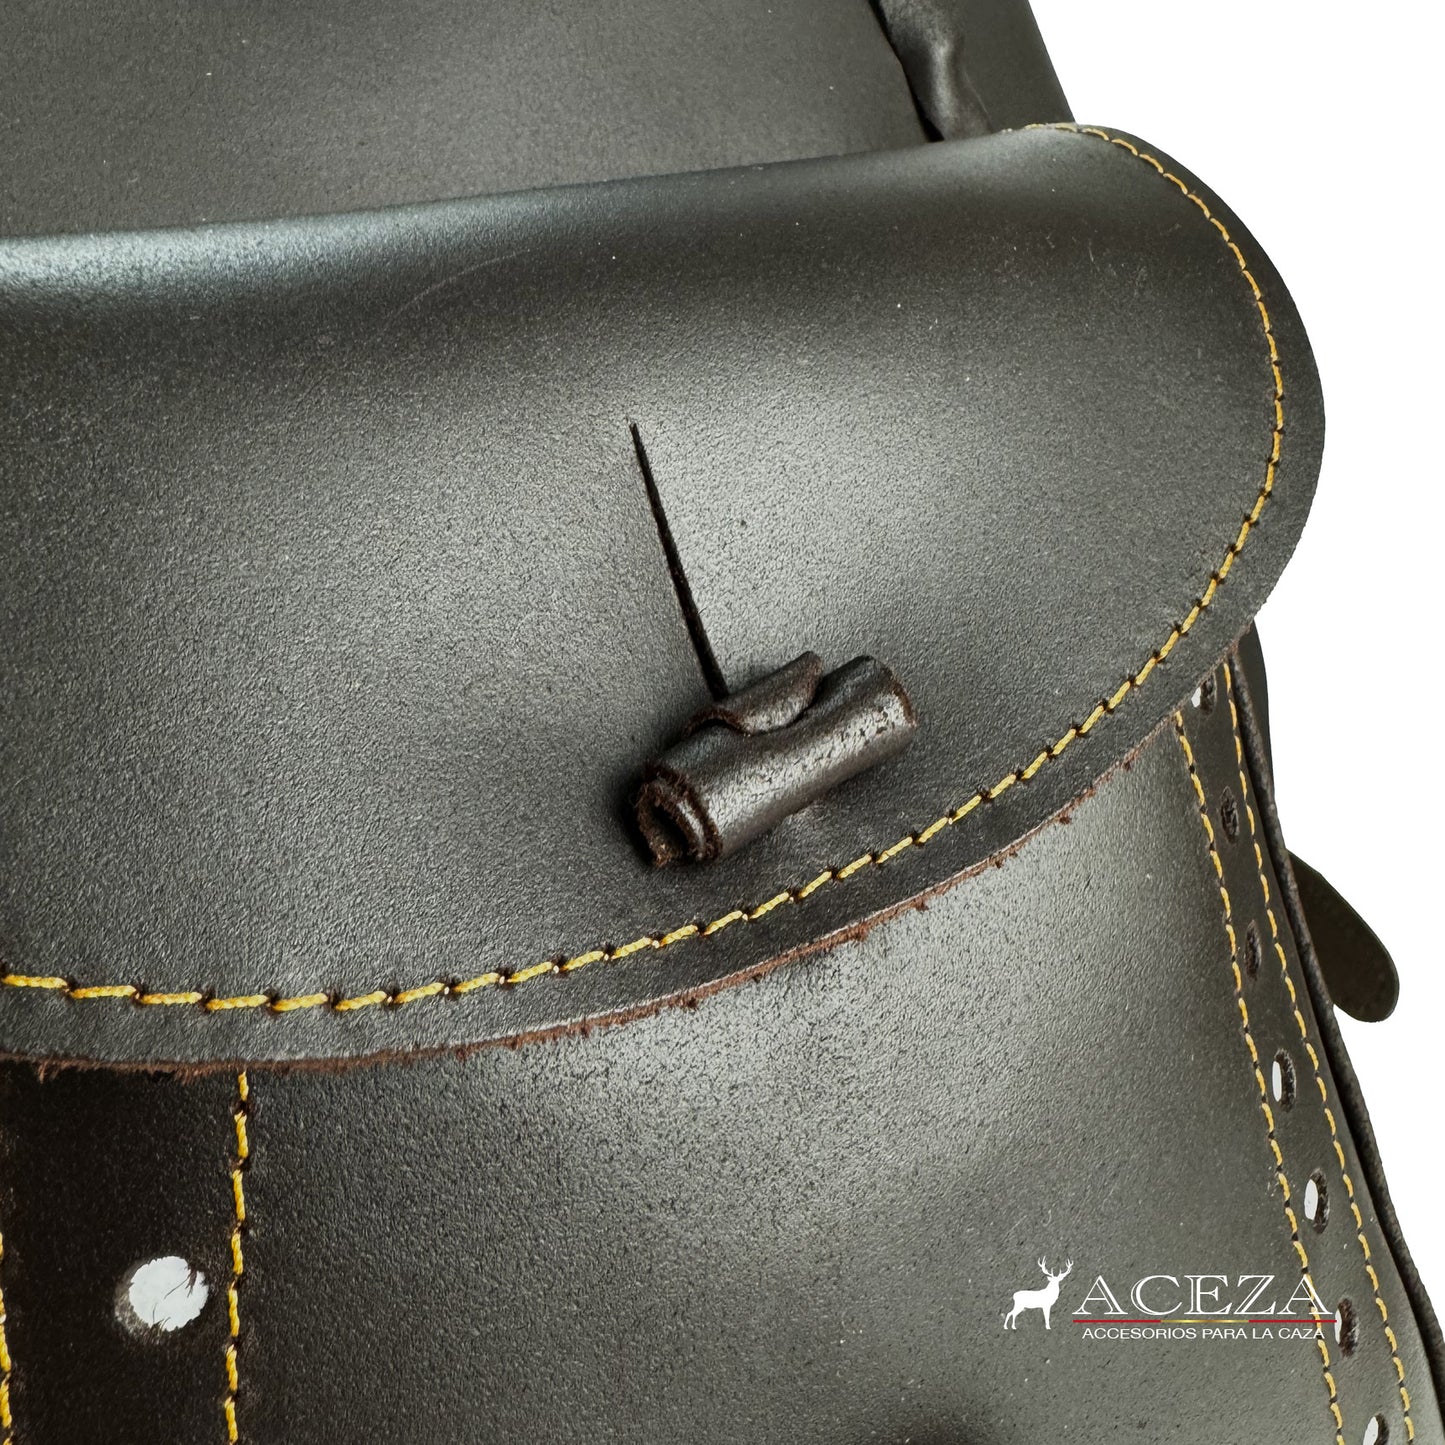 Detalles del bolsillo delantero del morral de caza de cuero, ofreciendo acceso rápido y conveniente a tus herramientas esenciales. Descubre la funcionalidad en ACEZA